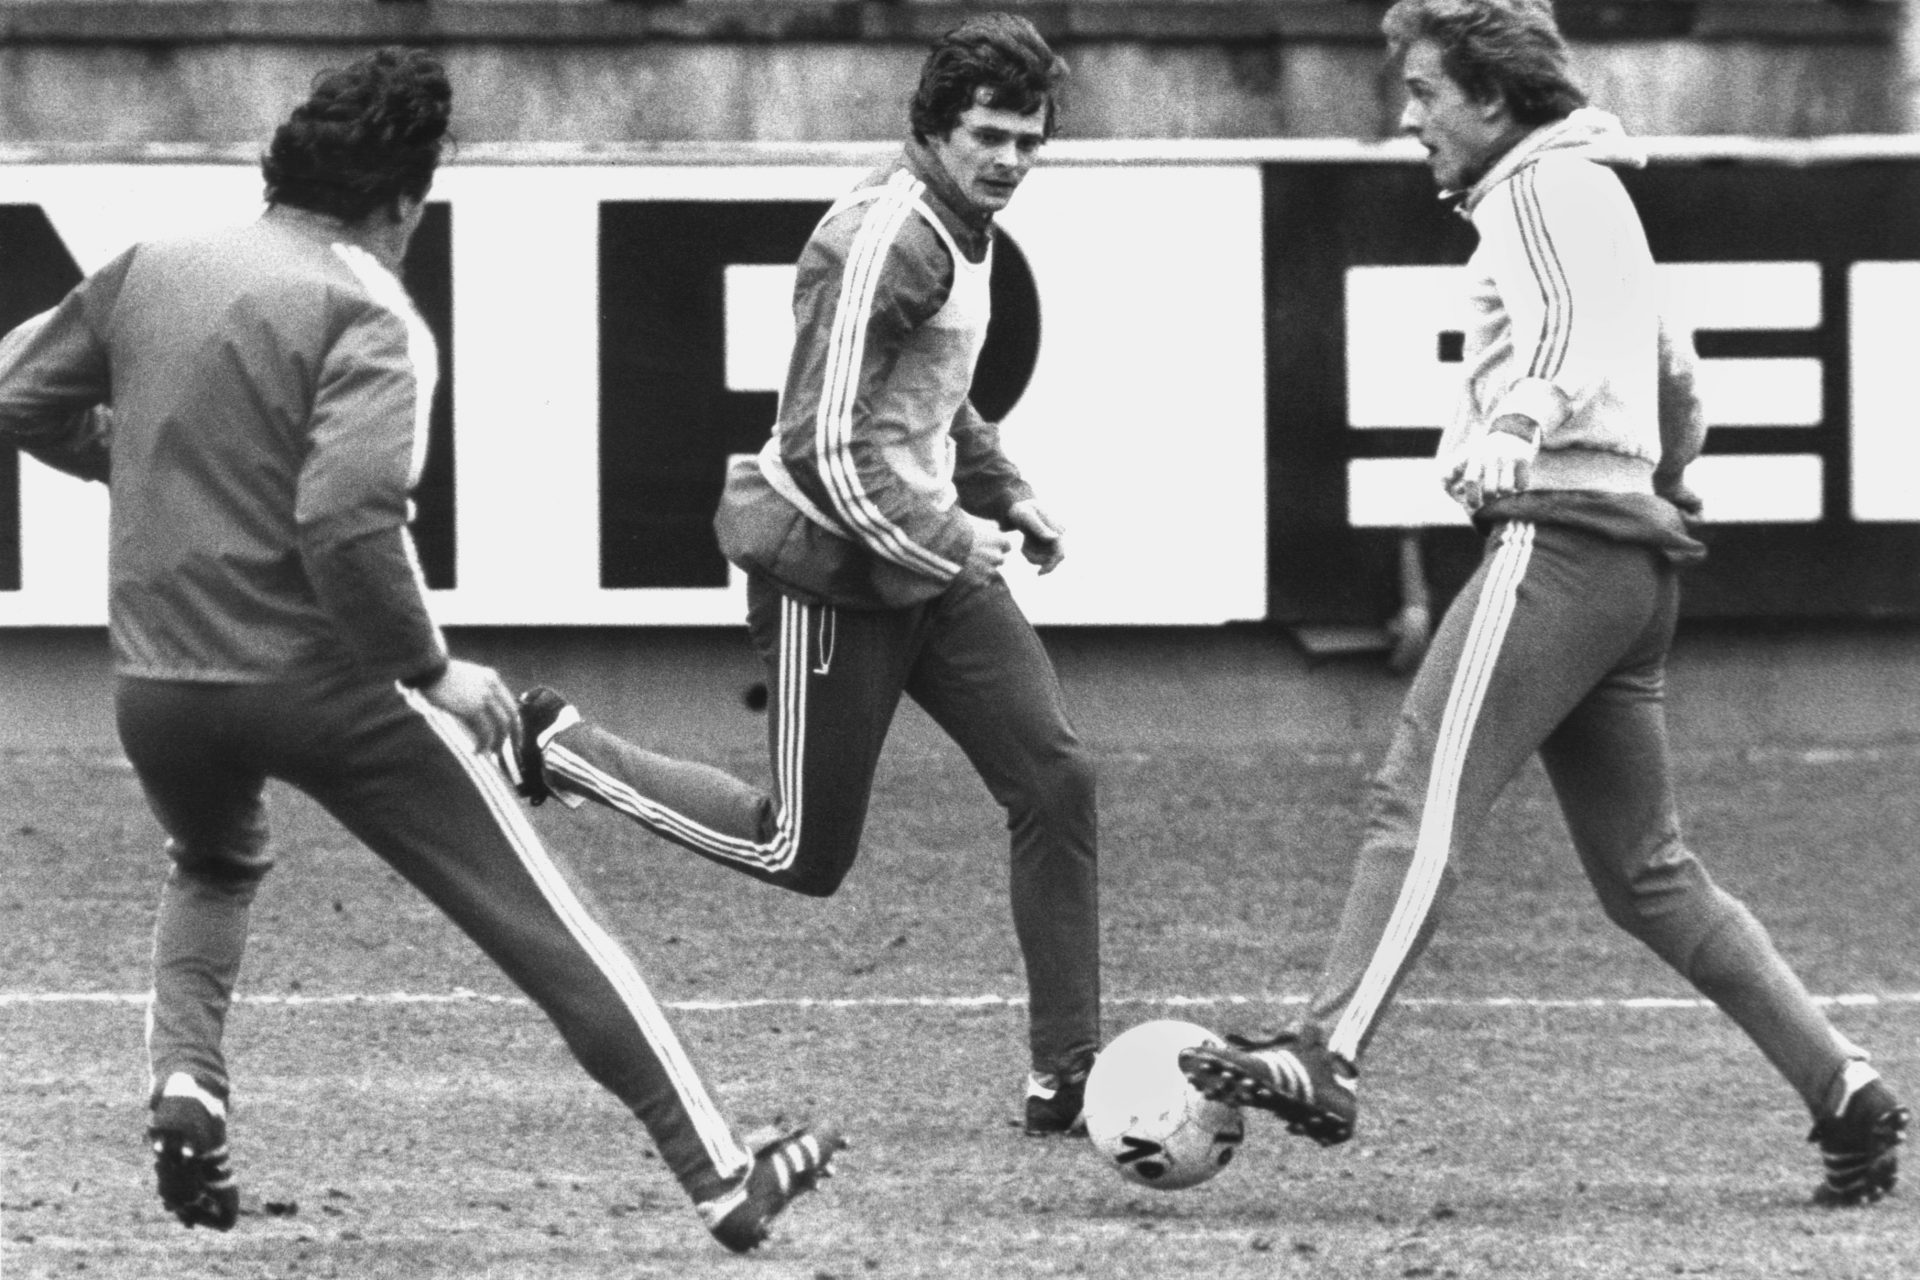 Lutz Eigendorf: Der Fußballer, der aus der DDR floh und kurz darauf bei einem Verkehrsunfall mysteriös ums Leben kam